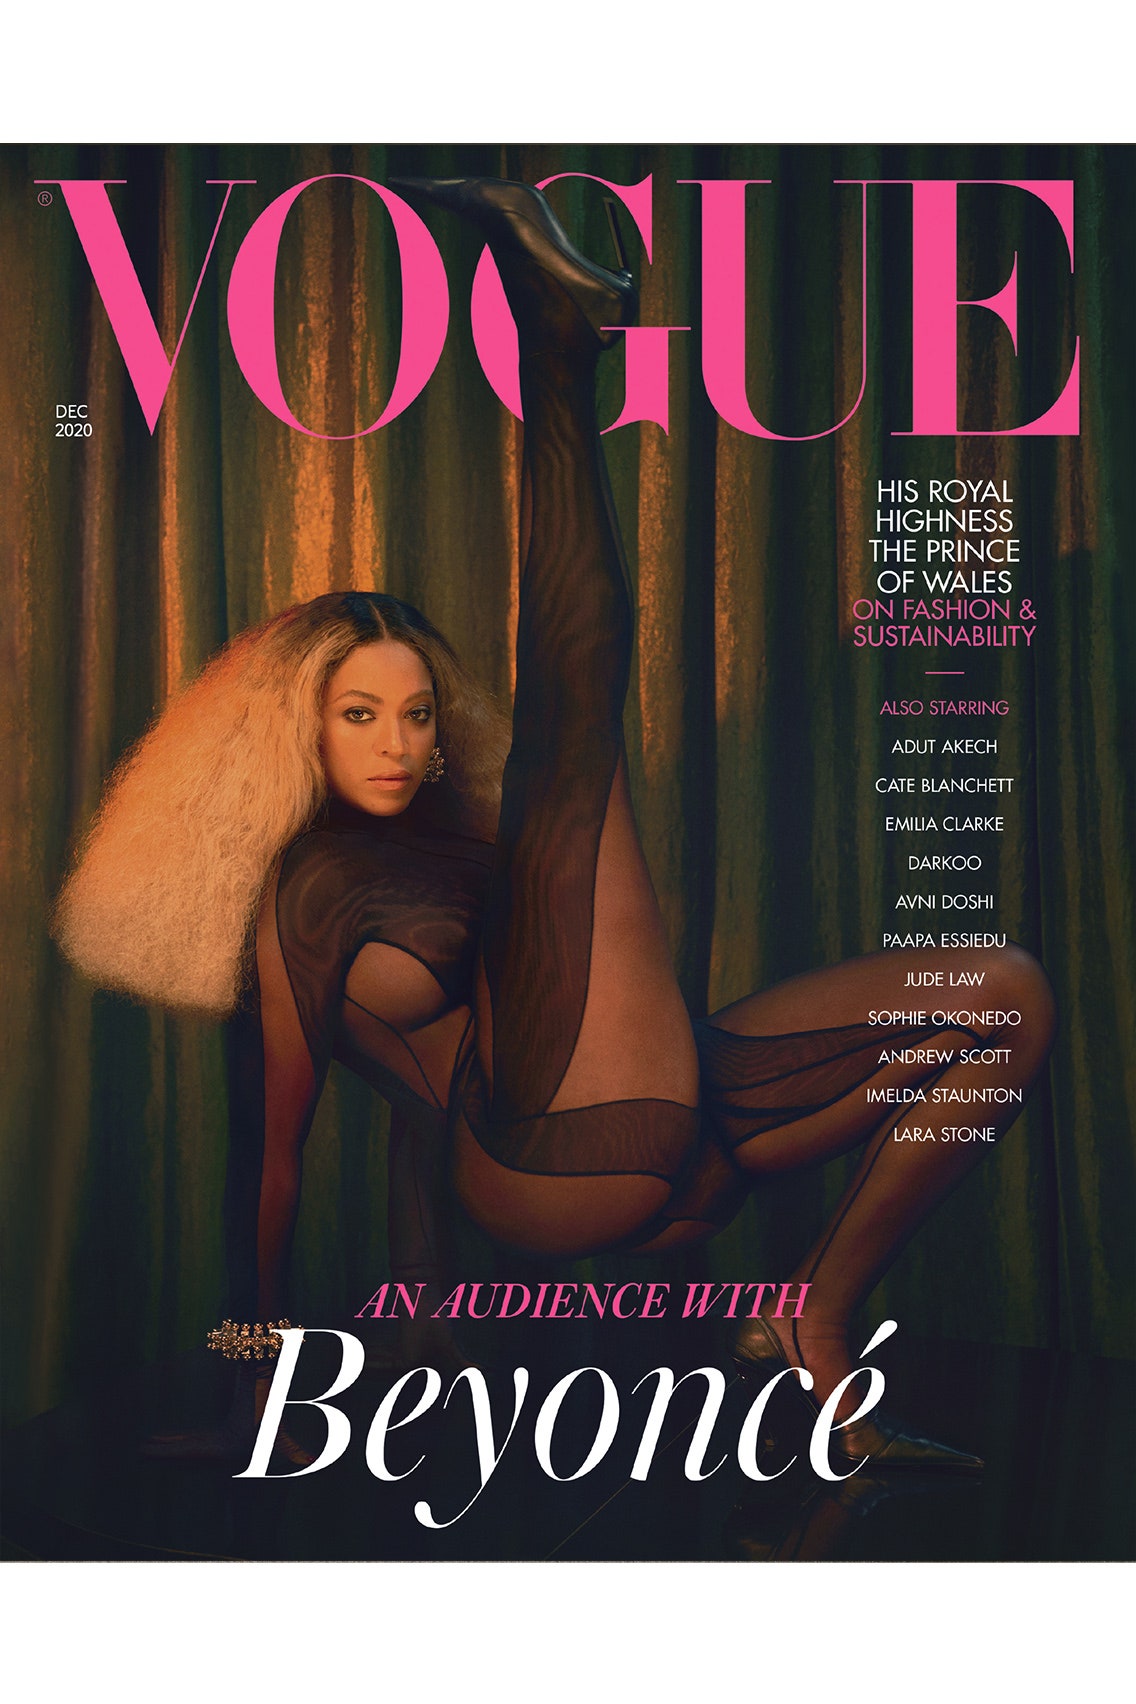 «2020 год изменил меня, и я позволила себе сосредоточиться на радости», — Бейонсе дала редкое интервью британскому Vogue